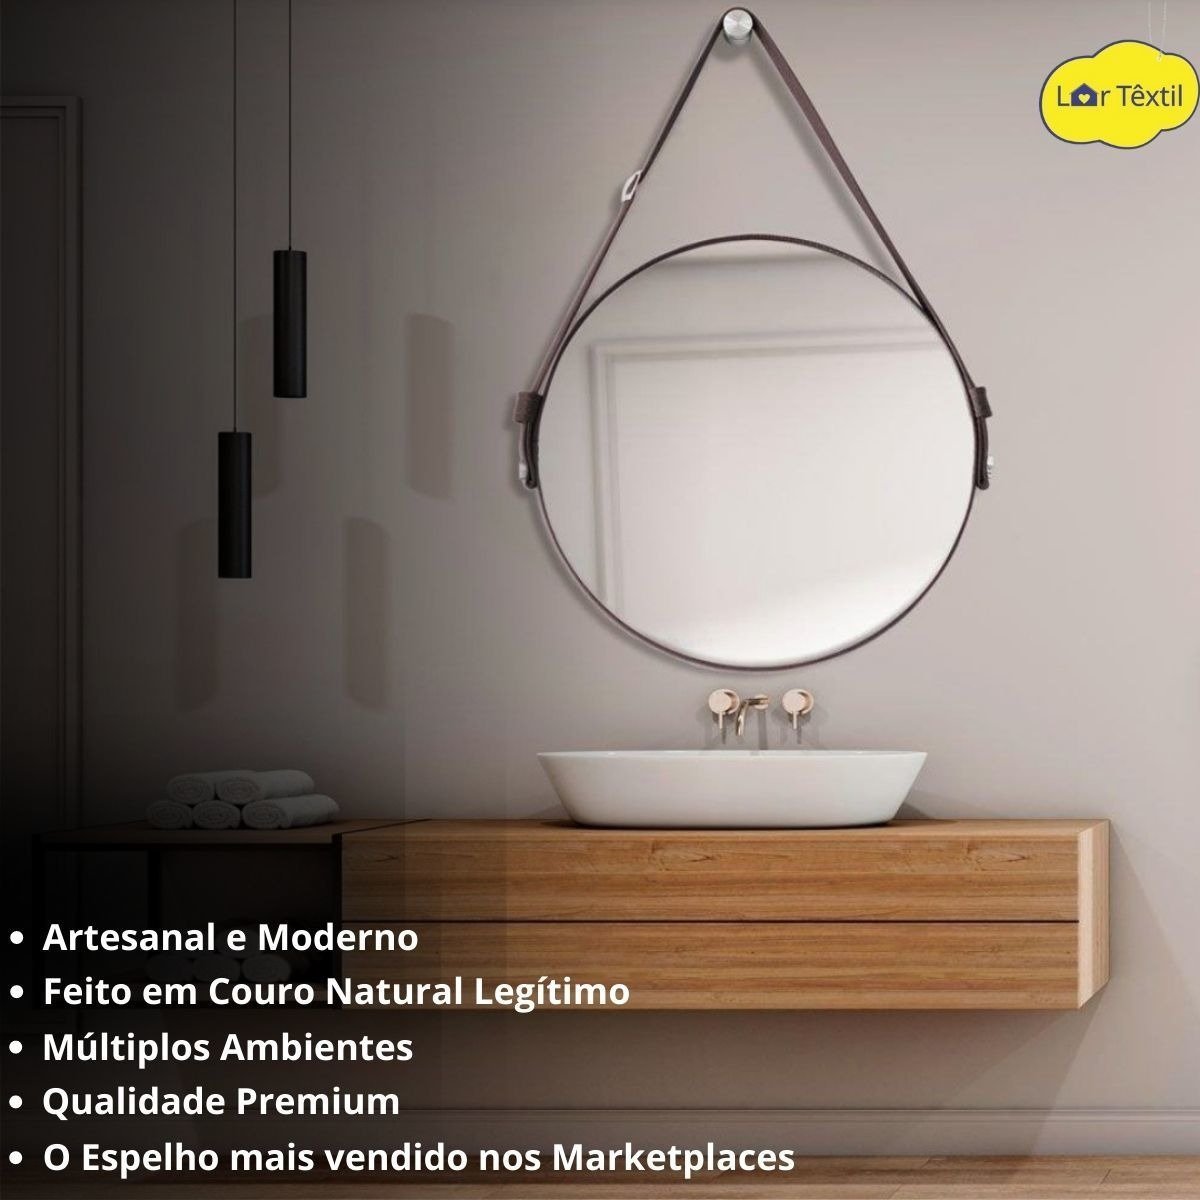 Espelho Adnet Decorativo Redondo Banheiro Antigo 60cm + Pino Suporte Alça Em Couro Caramelo - 5